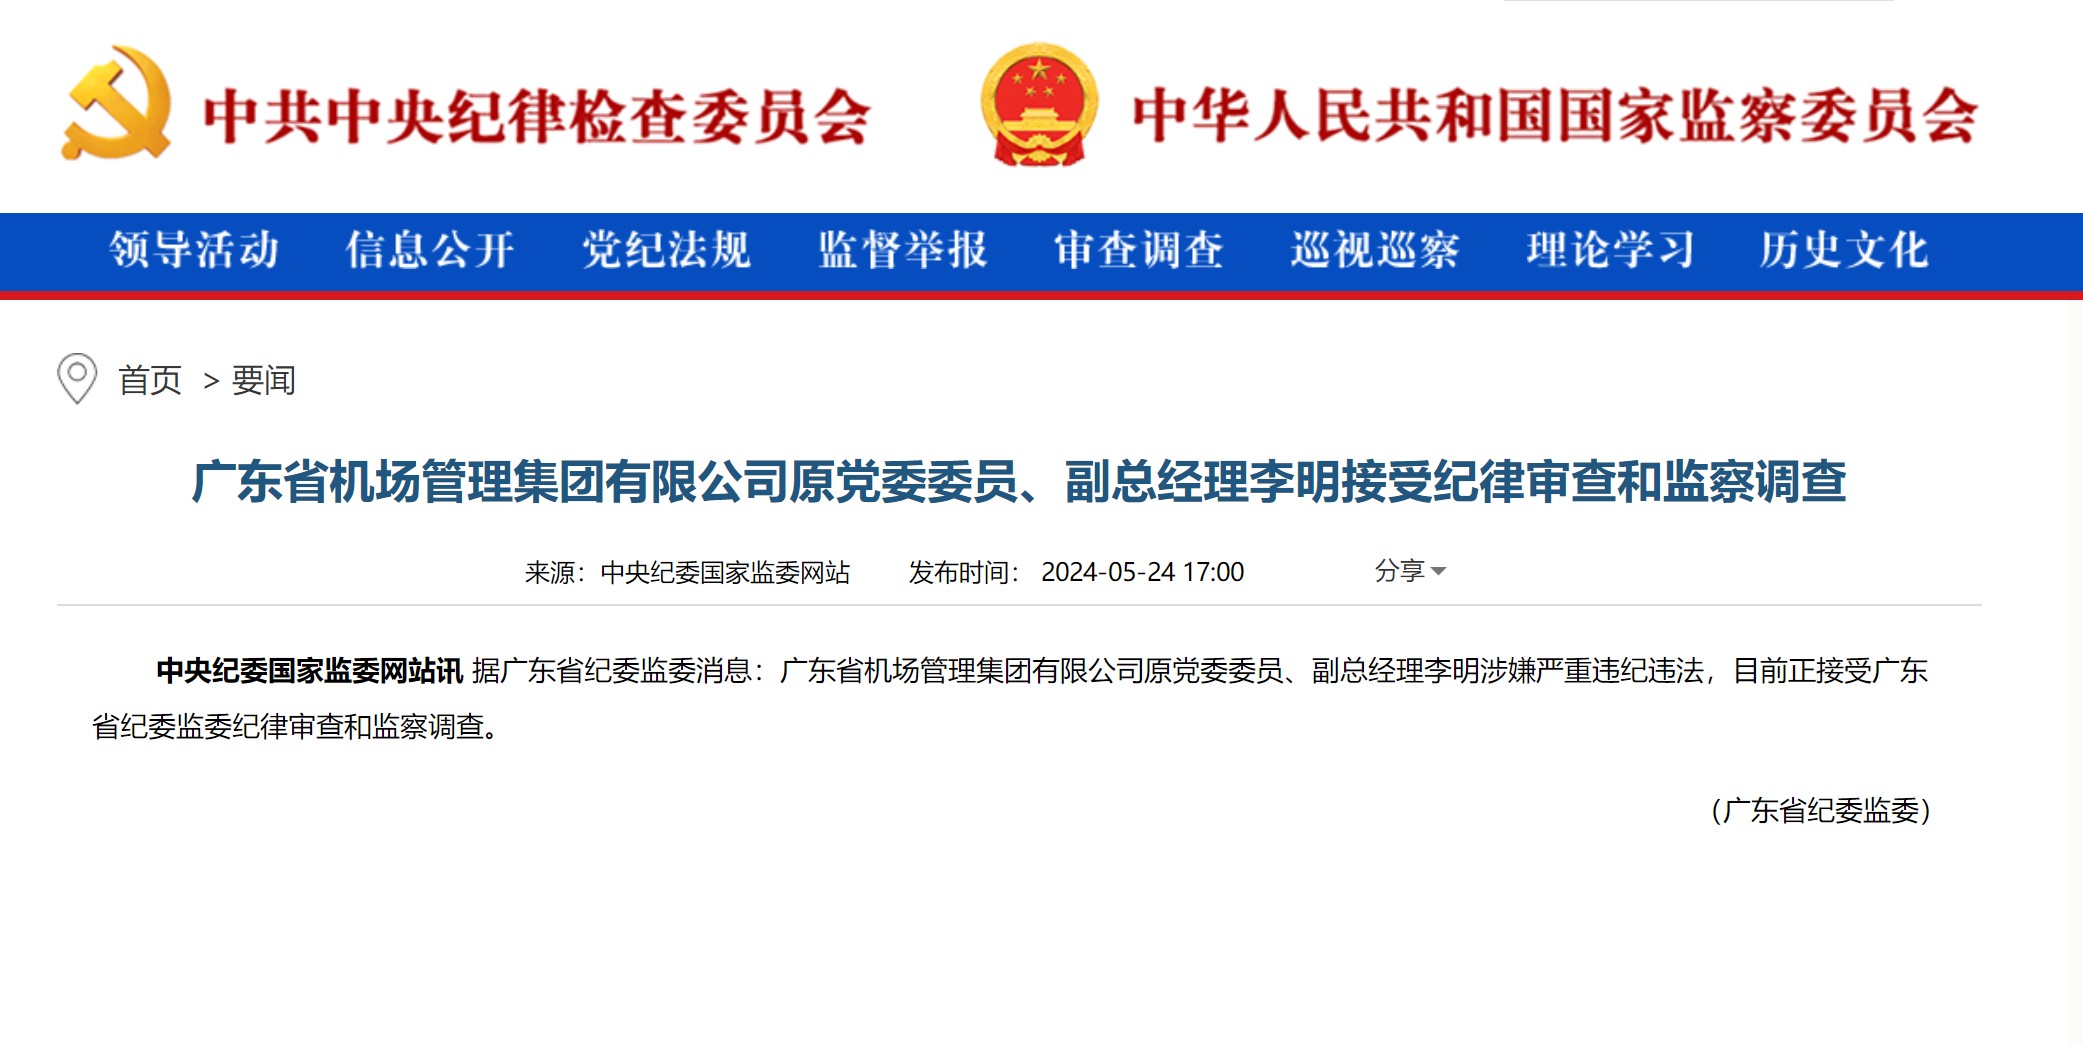 广东省机场管理集团有限公司原副总经理李明接受审查调查